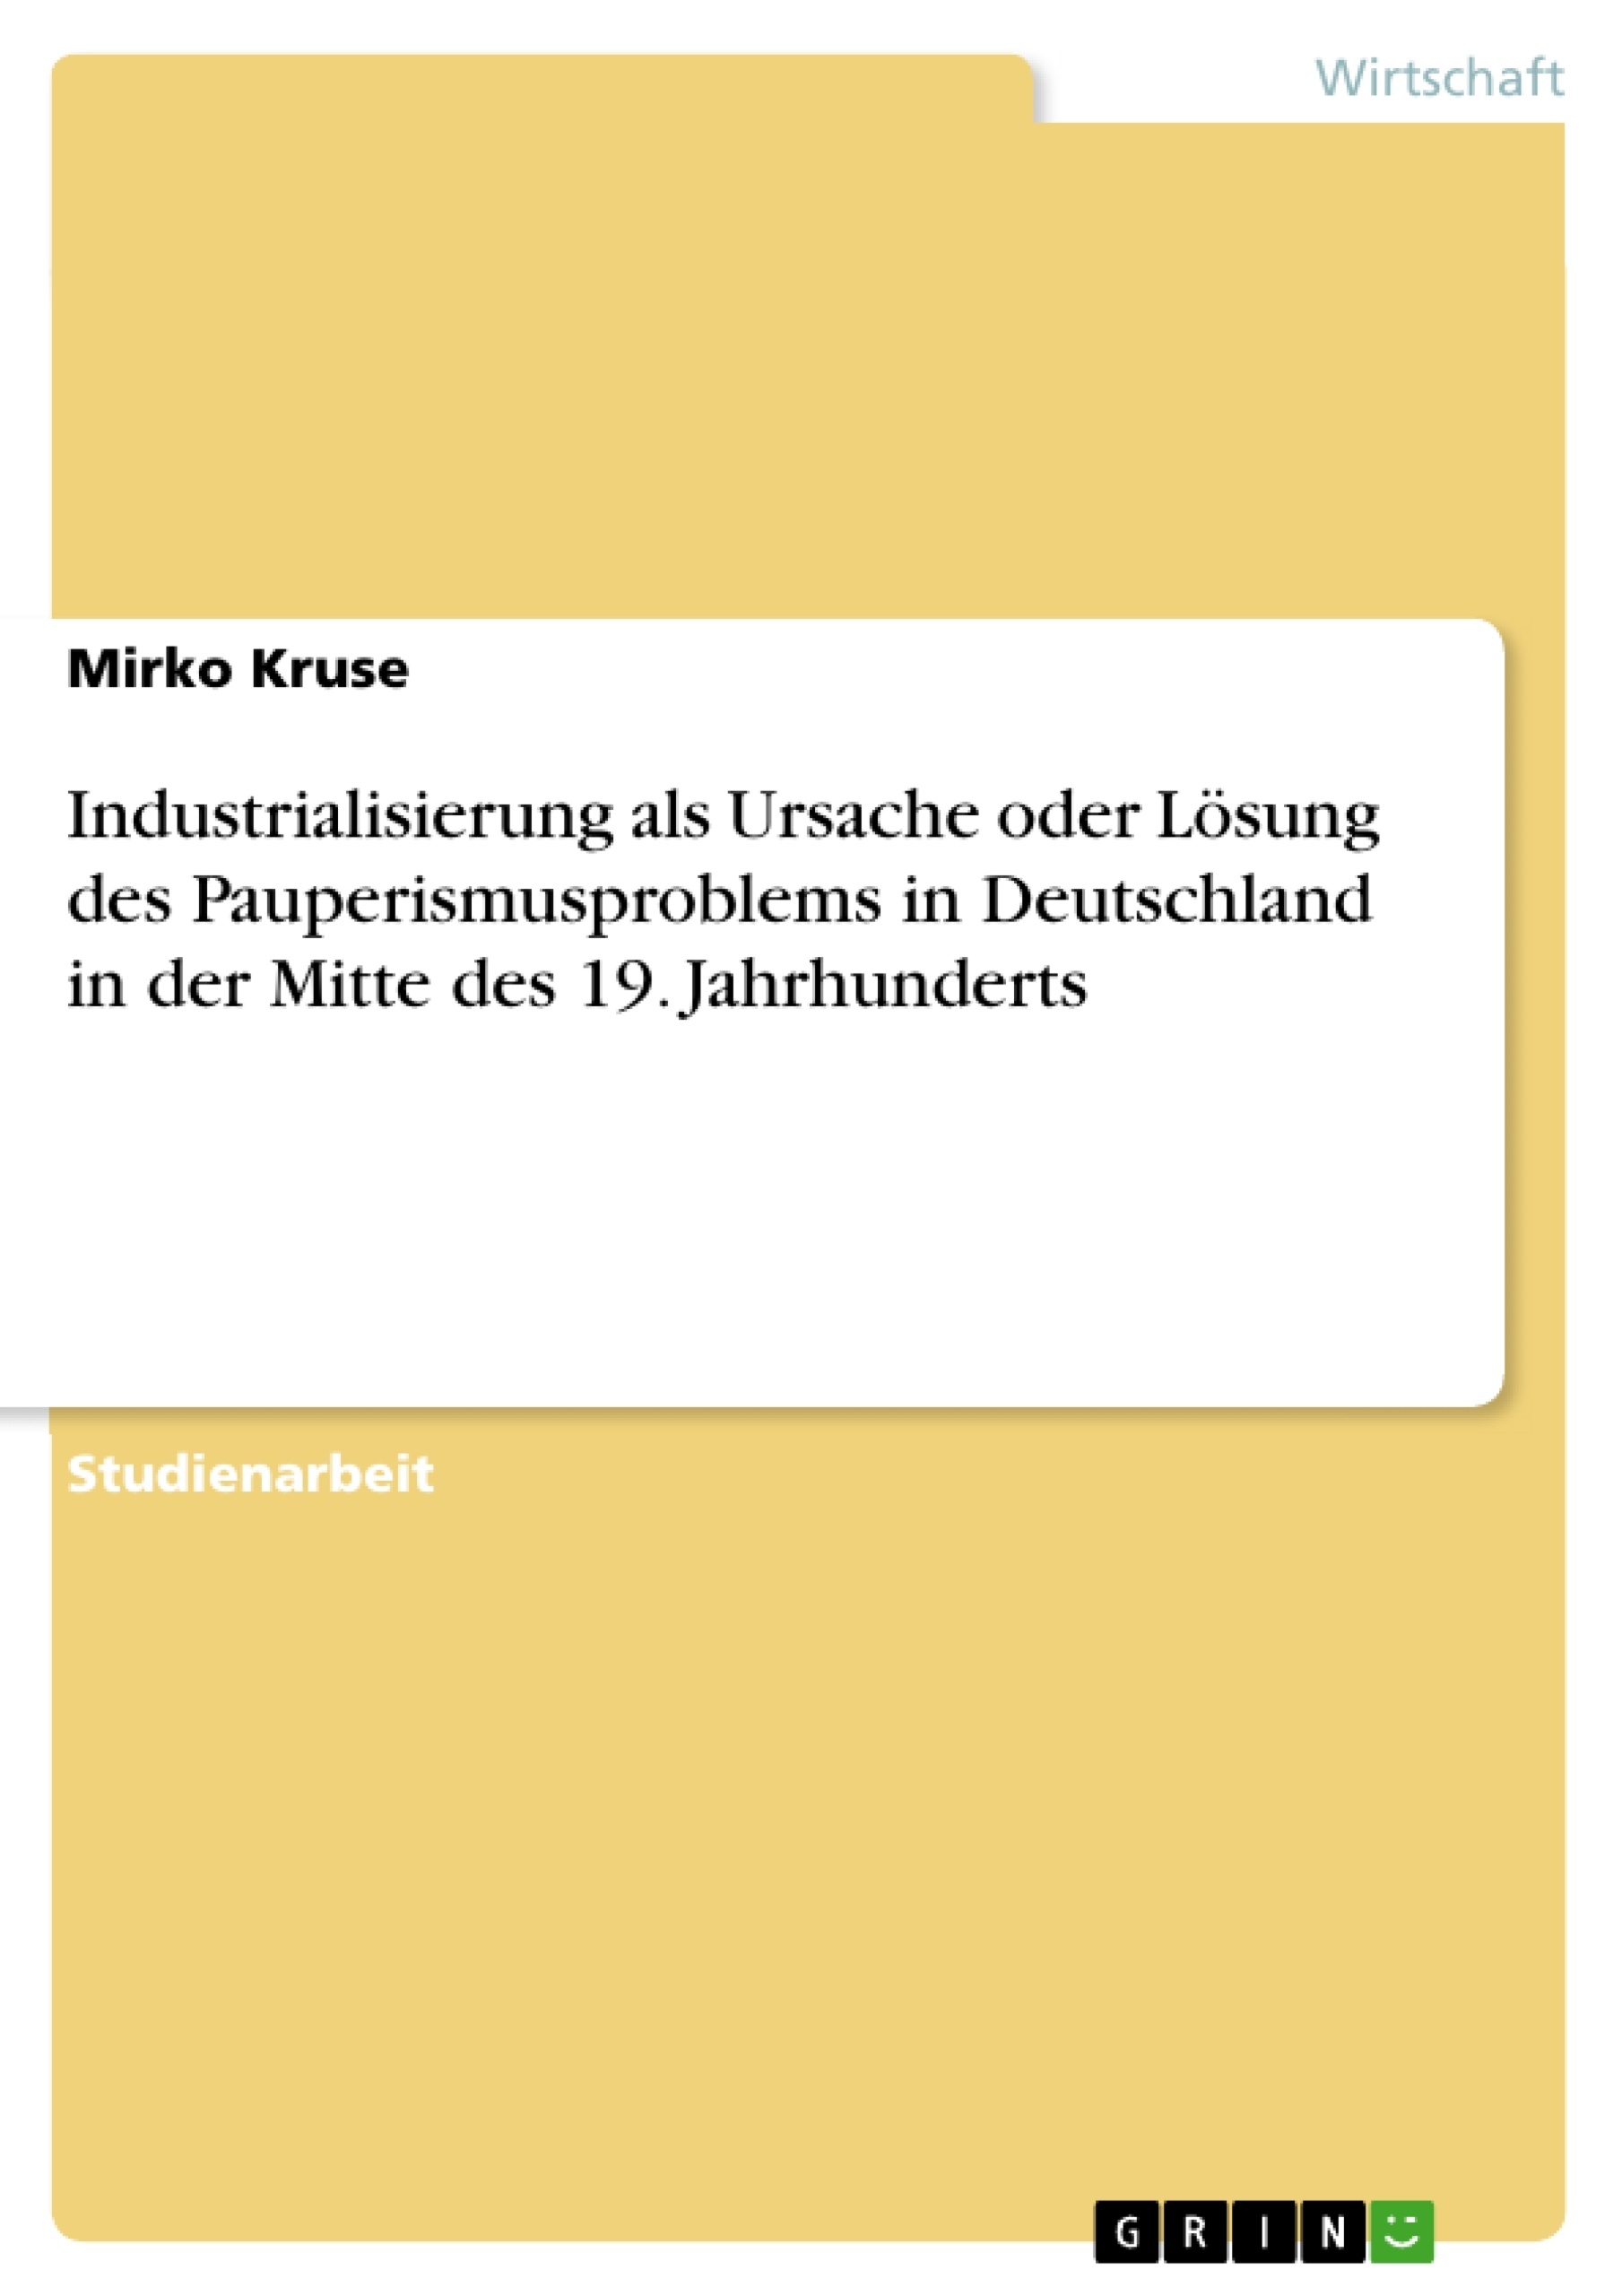 Title: Industrialisierung als Ursache oder Lösung des Pauperismusproblems in Deutschland in der Mitte des 19. Jahrhunderts